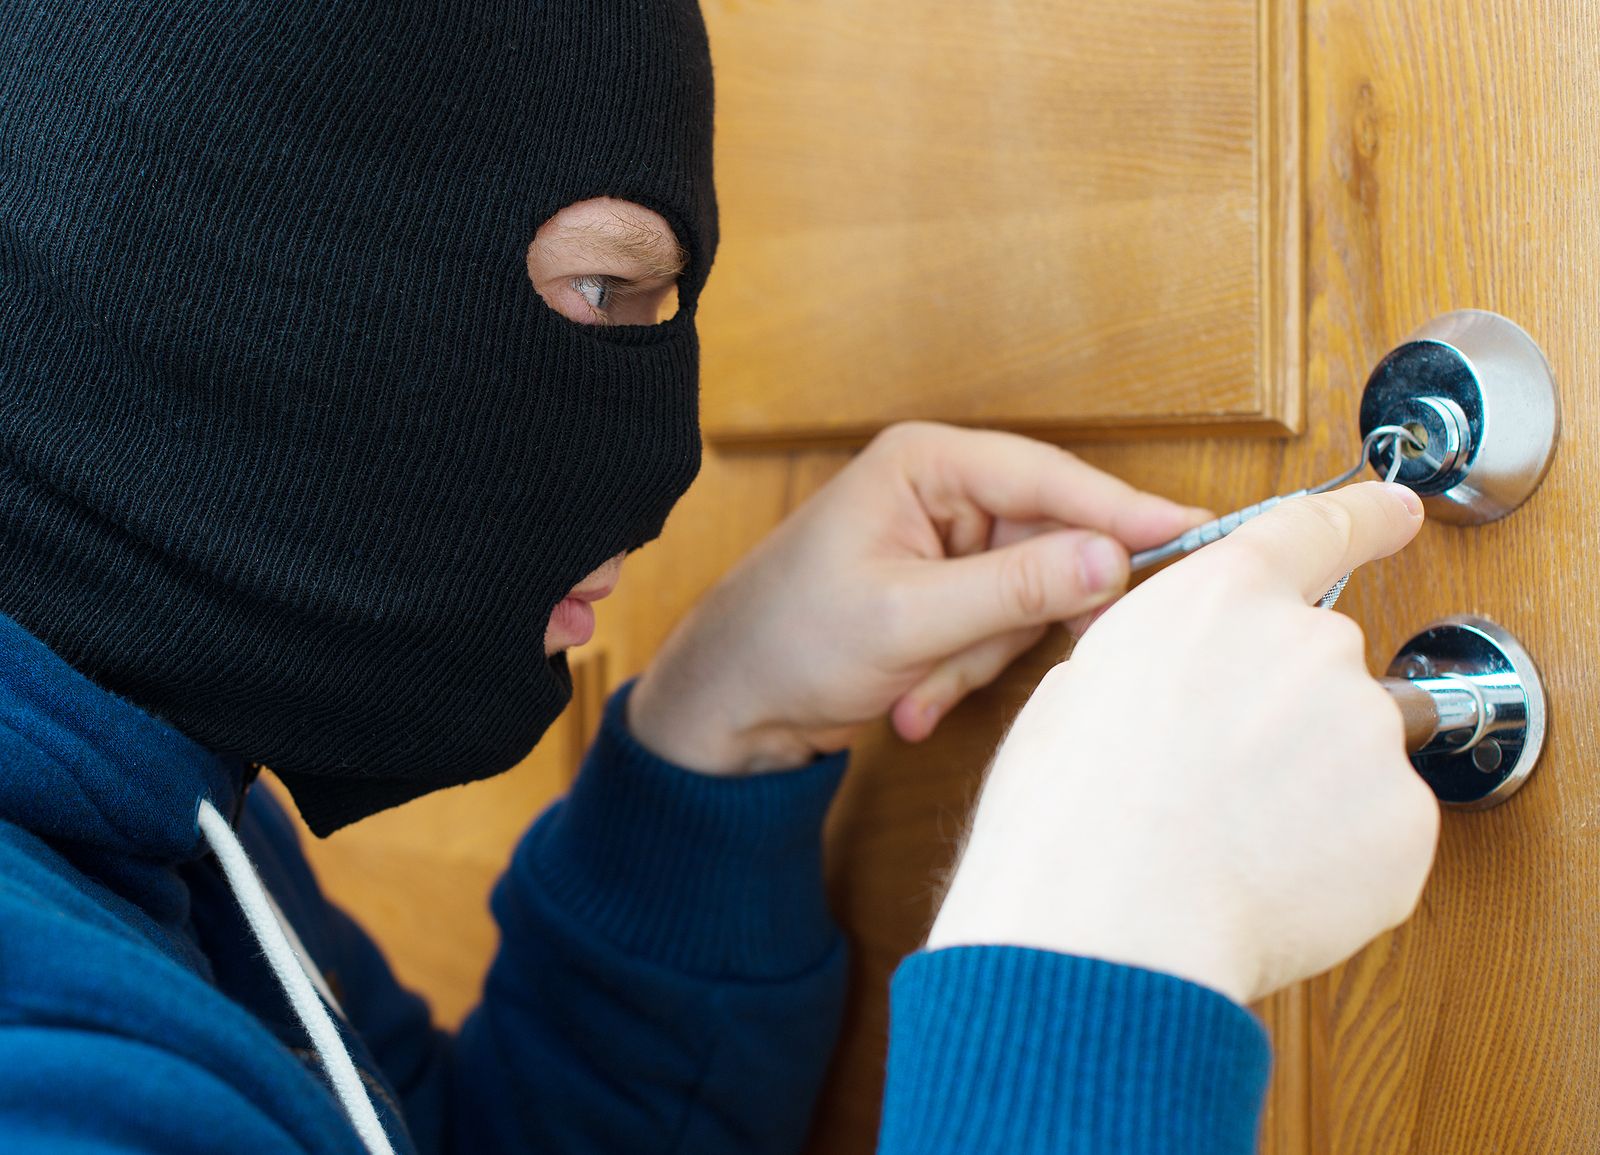 Bumping: conoce esta nueva técnica que usan los ladrones para robar casas